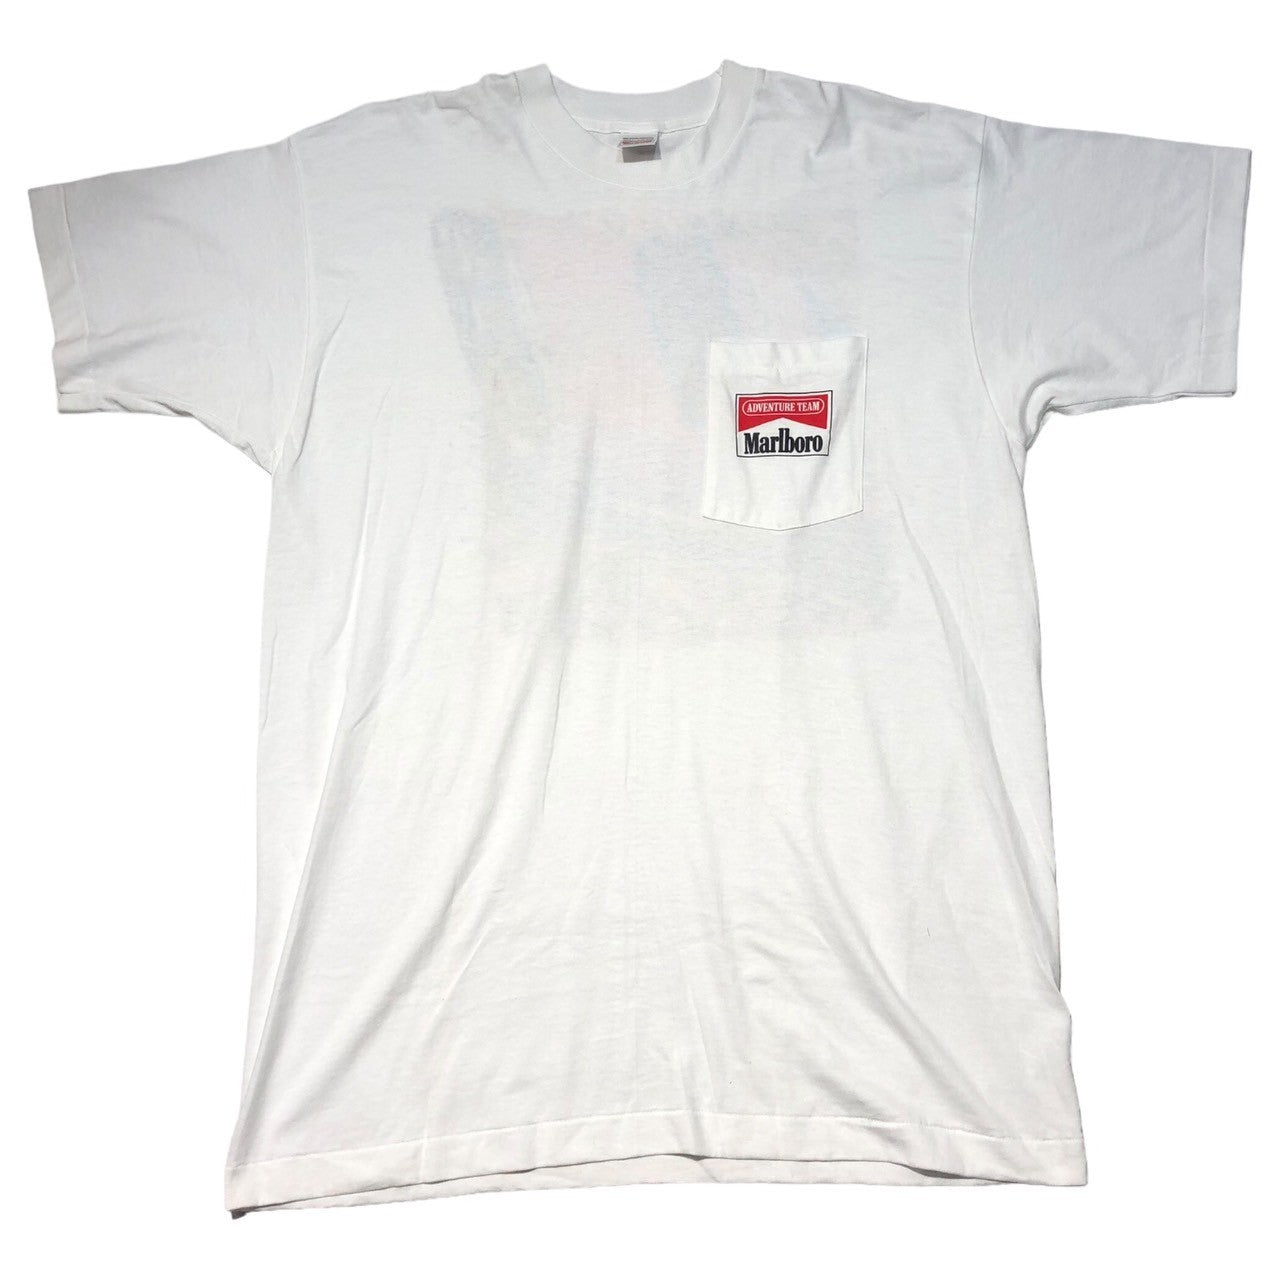 Marlboro(マールボロ) 90's ”ADVENTURE TEAM”  T-shirt アドベンチャーチーム ポケット ロゴ Tシャツ FREE ホワイト 90年代 ヴィンテージ マルボロ デッドストック